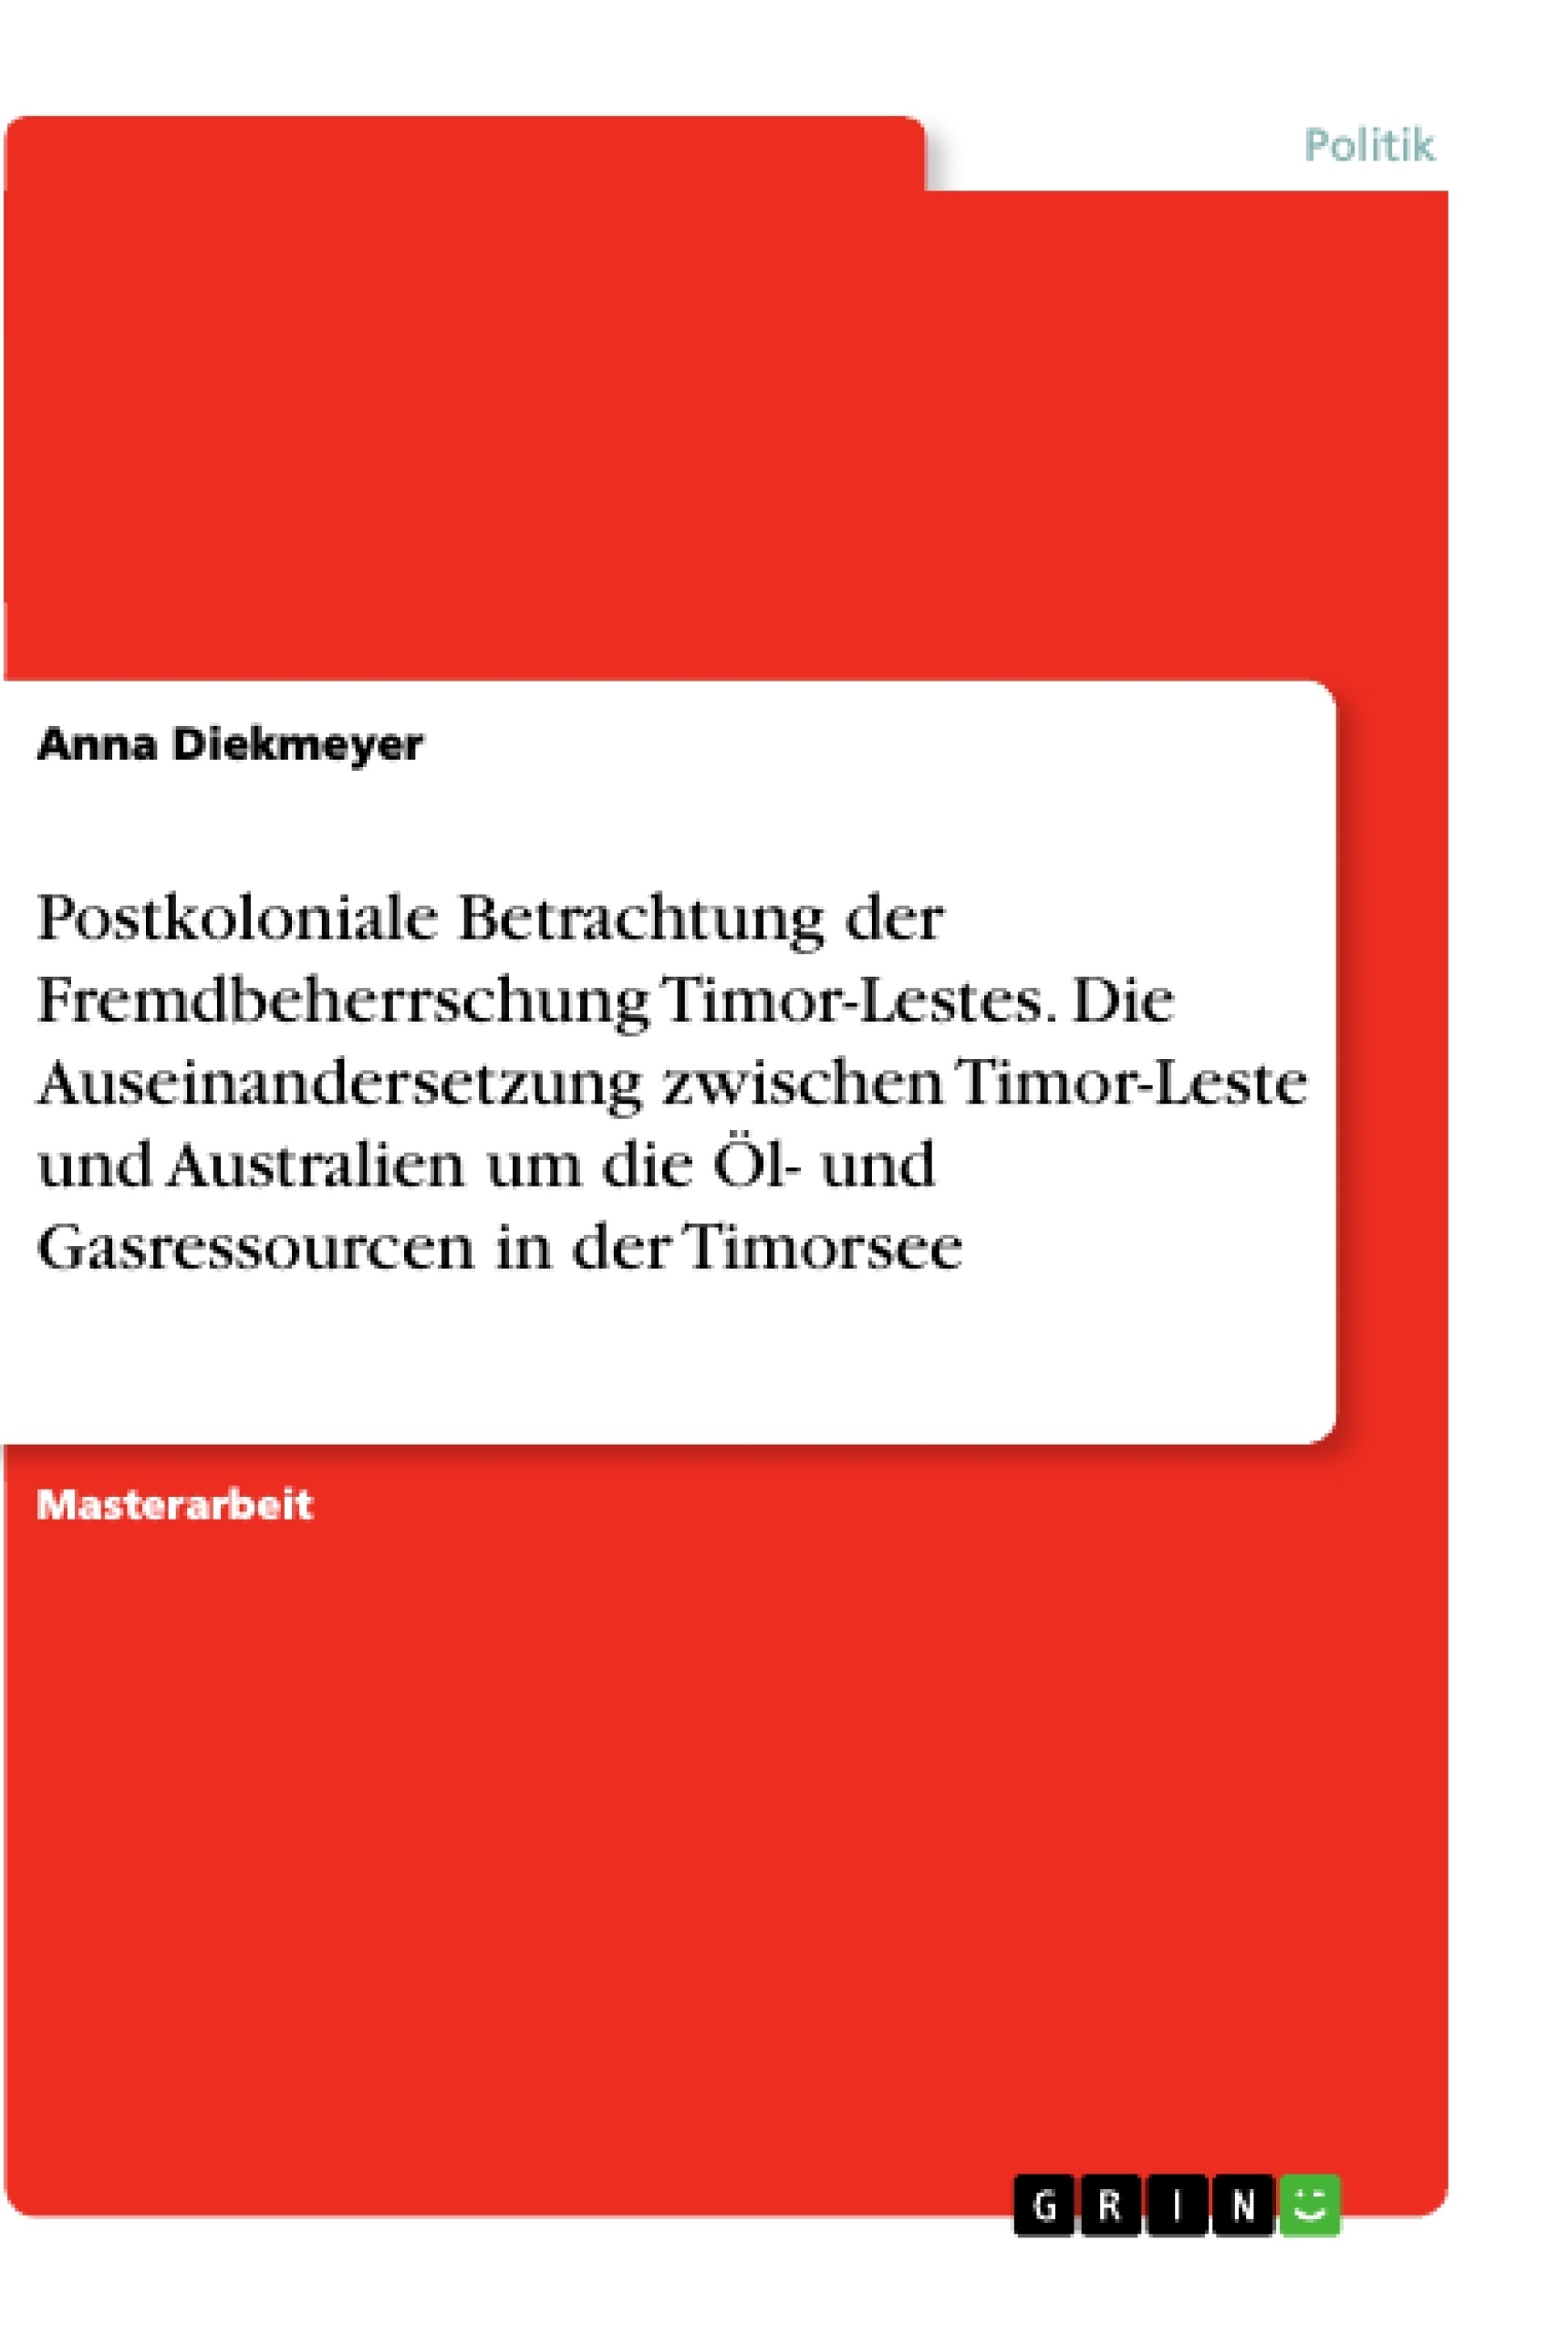 Titre: Postkoloniale Betrachtung der Fremdbeherrschung Timor-Lestes. Die Auseinandersetzung zwischen Timor-Leste und Australien um die Öl- und Gasressourcen in der Timorsee